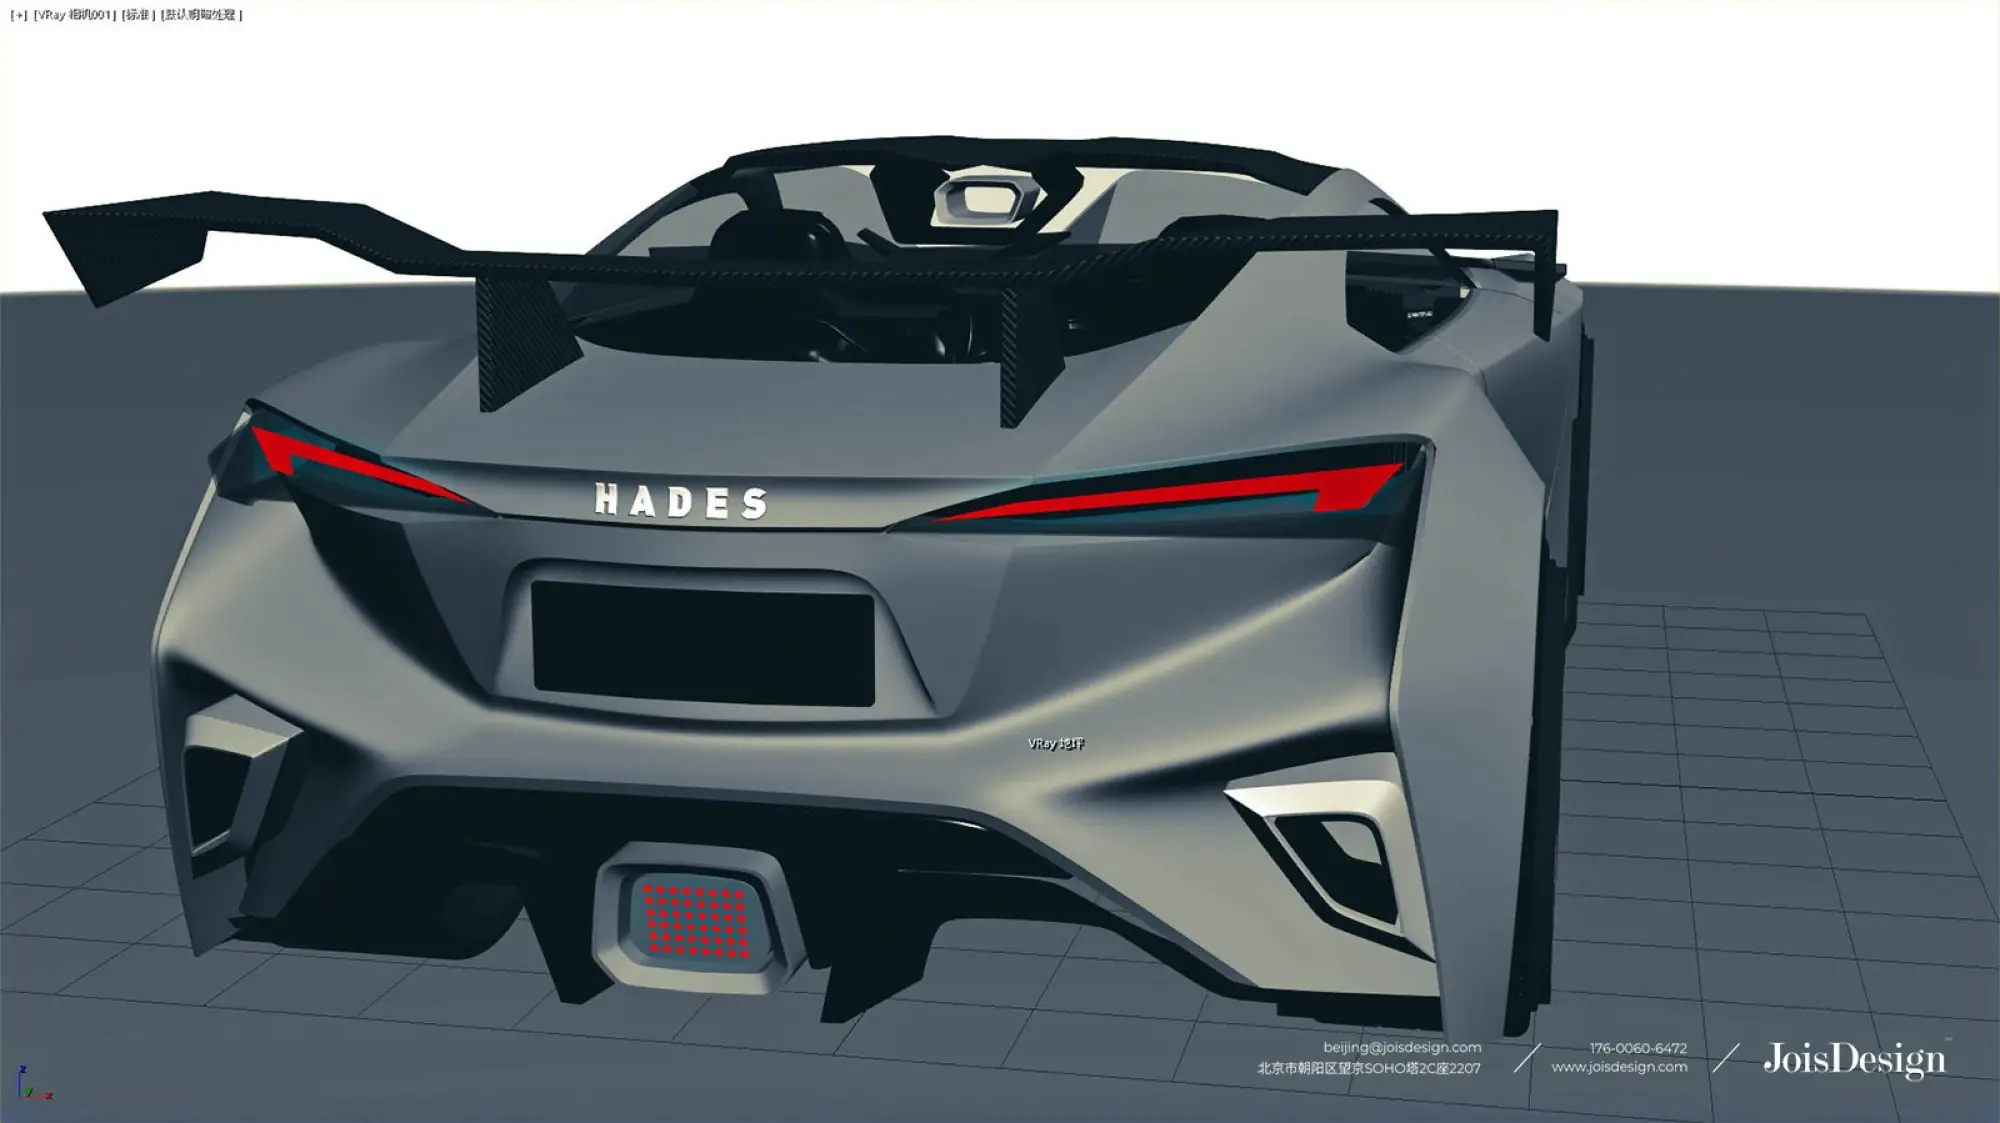 Nissan GT-R Hades rendering - 1